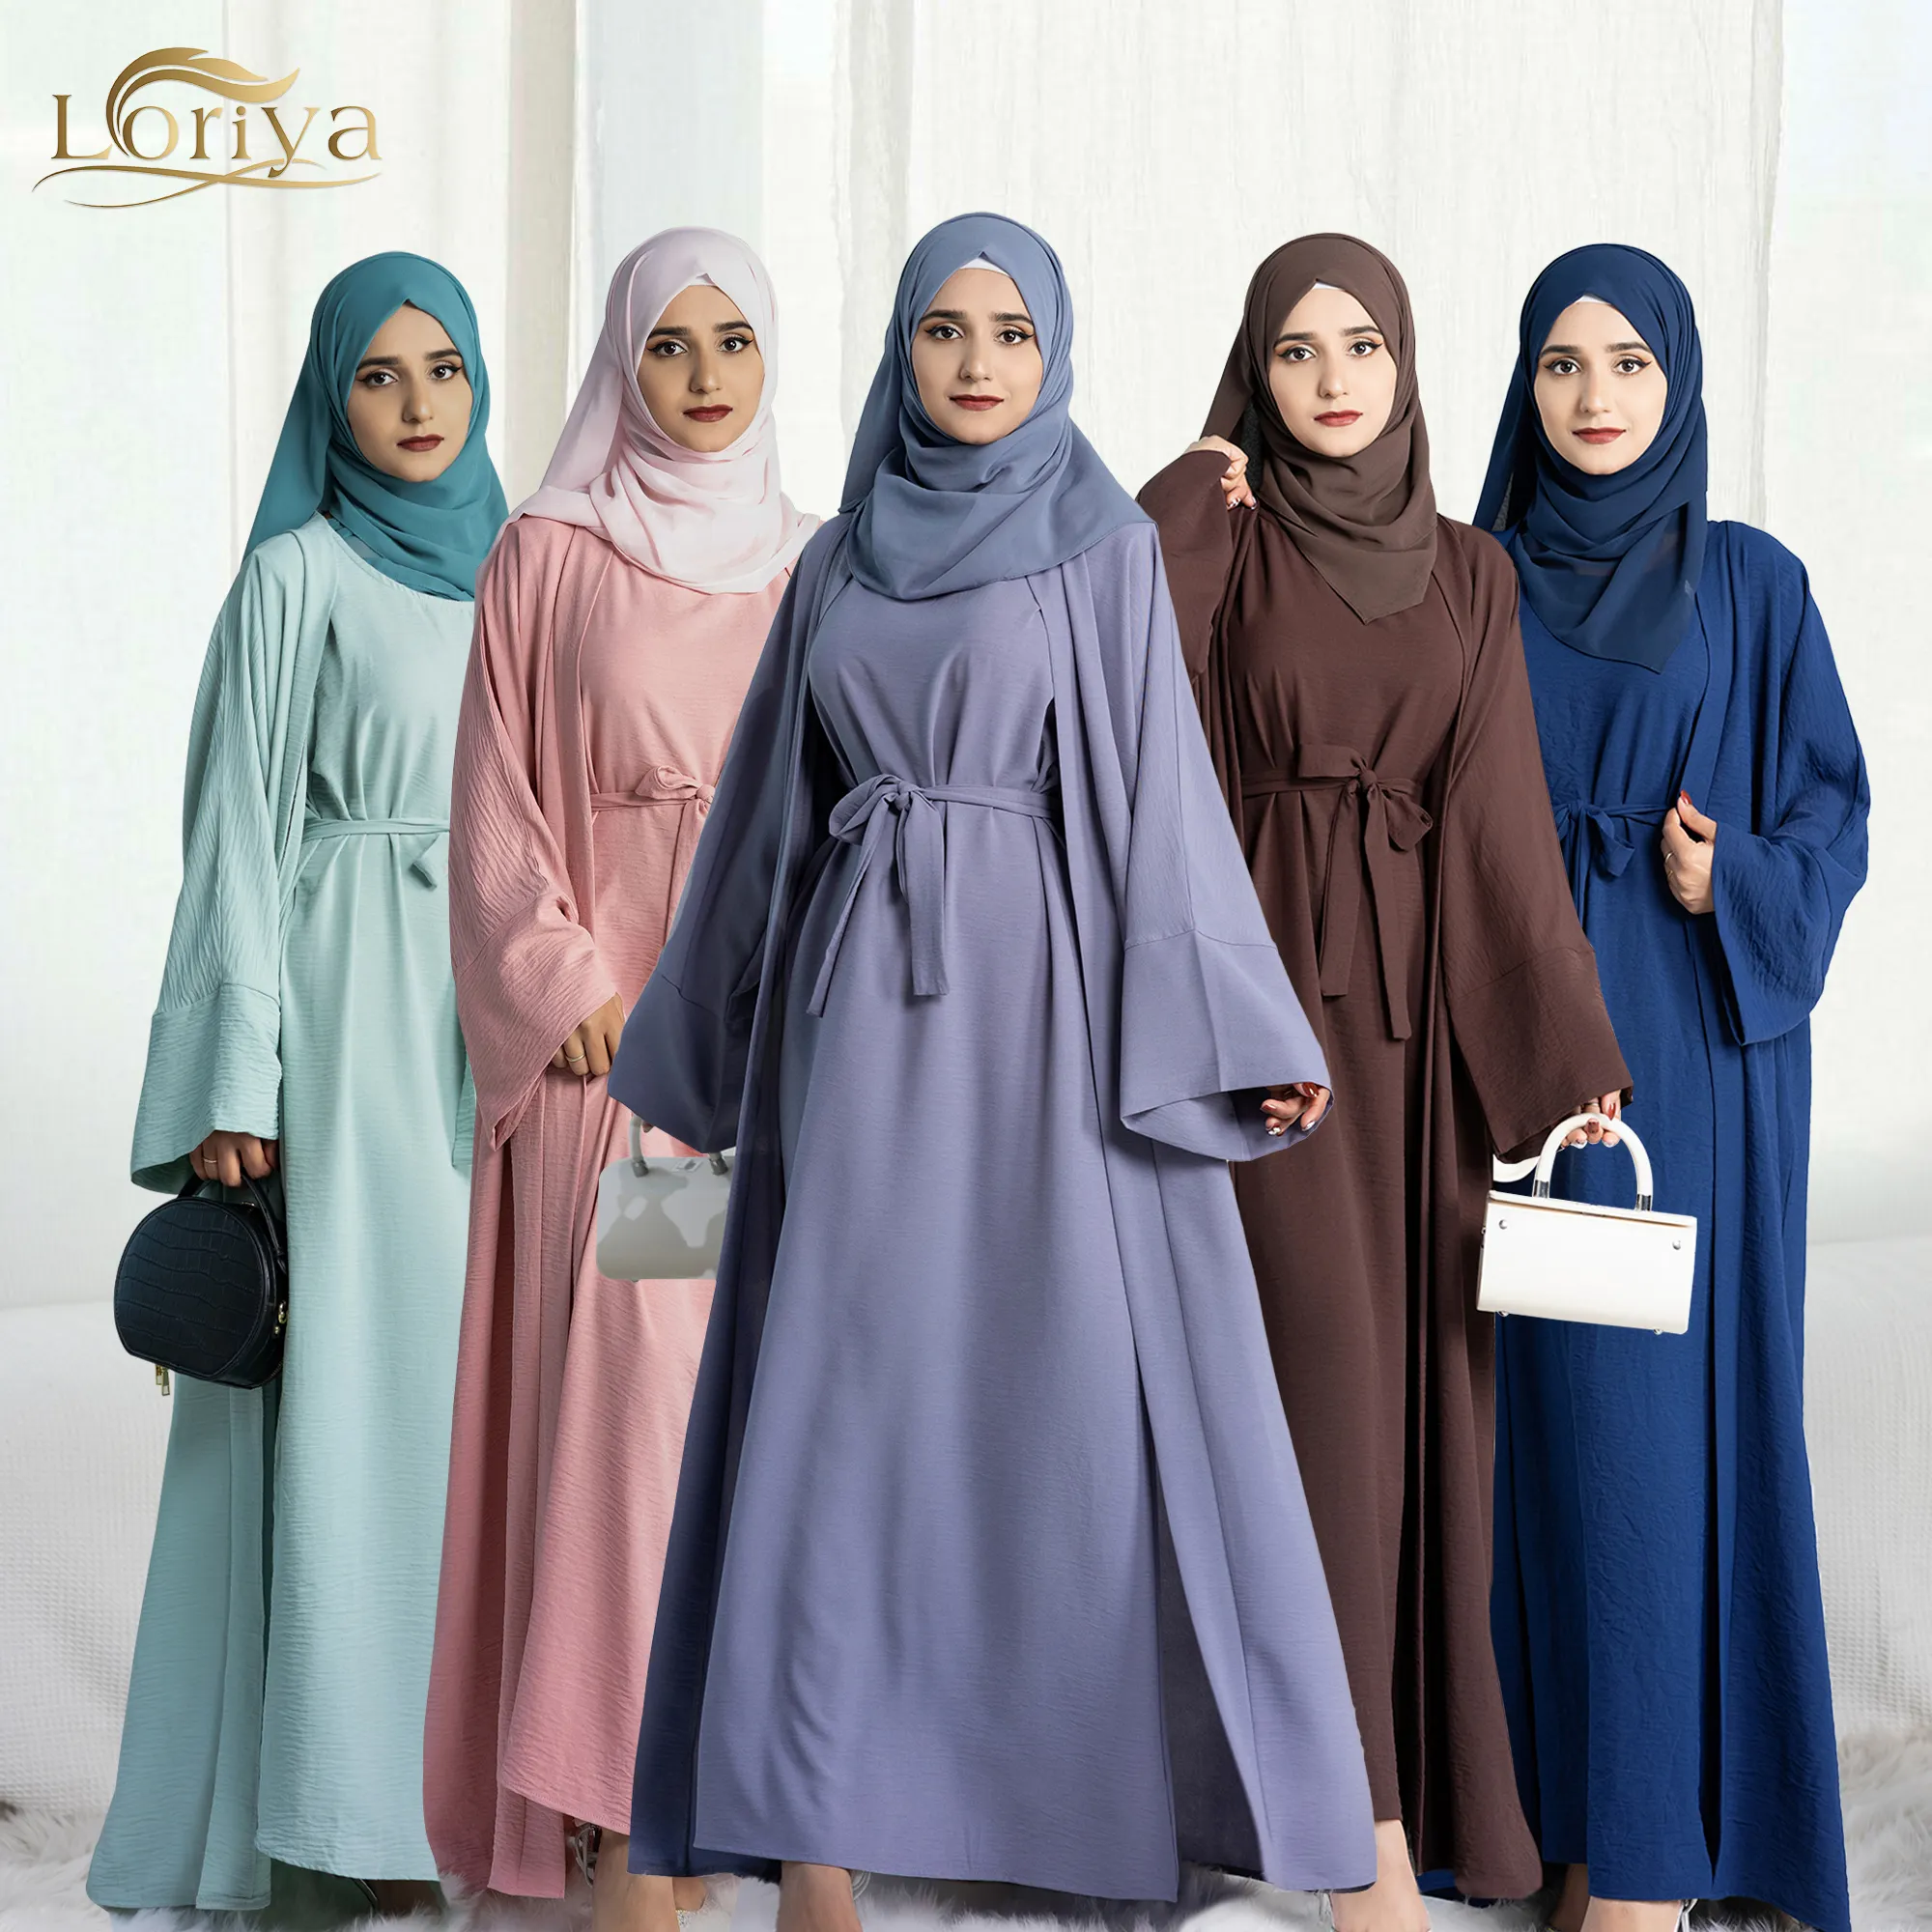 2022 Neueste Design 2-teilig Sets Abaya für Damen Dubai islamische Abaya Kleidung muslimisches Kleid-Sets islamische moderne Abaya Großhandel